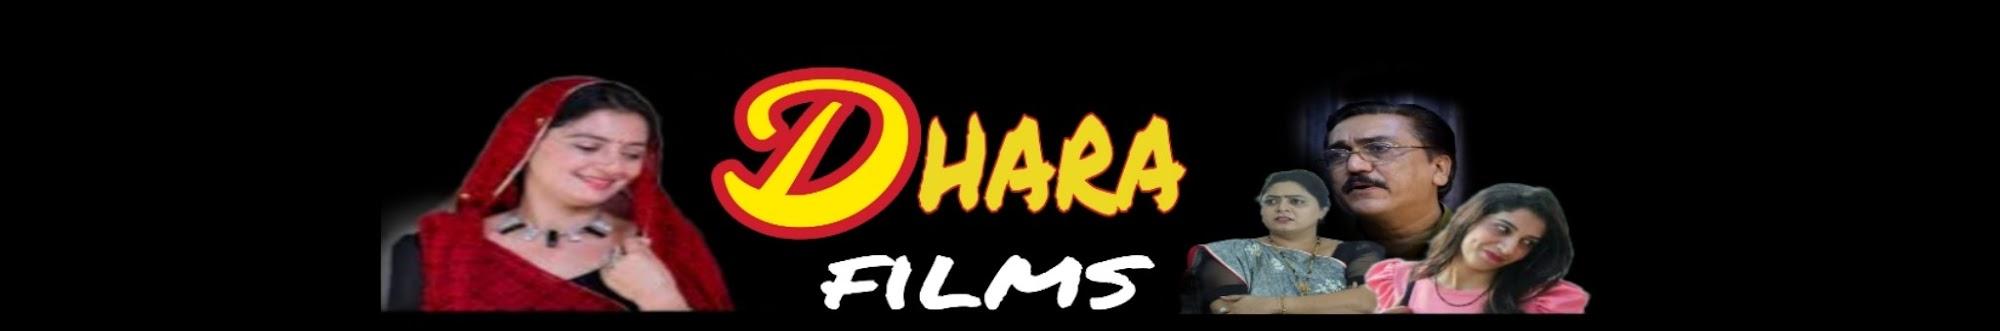 Dhara Films